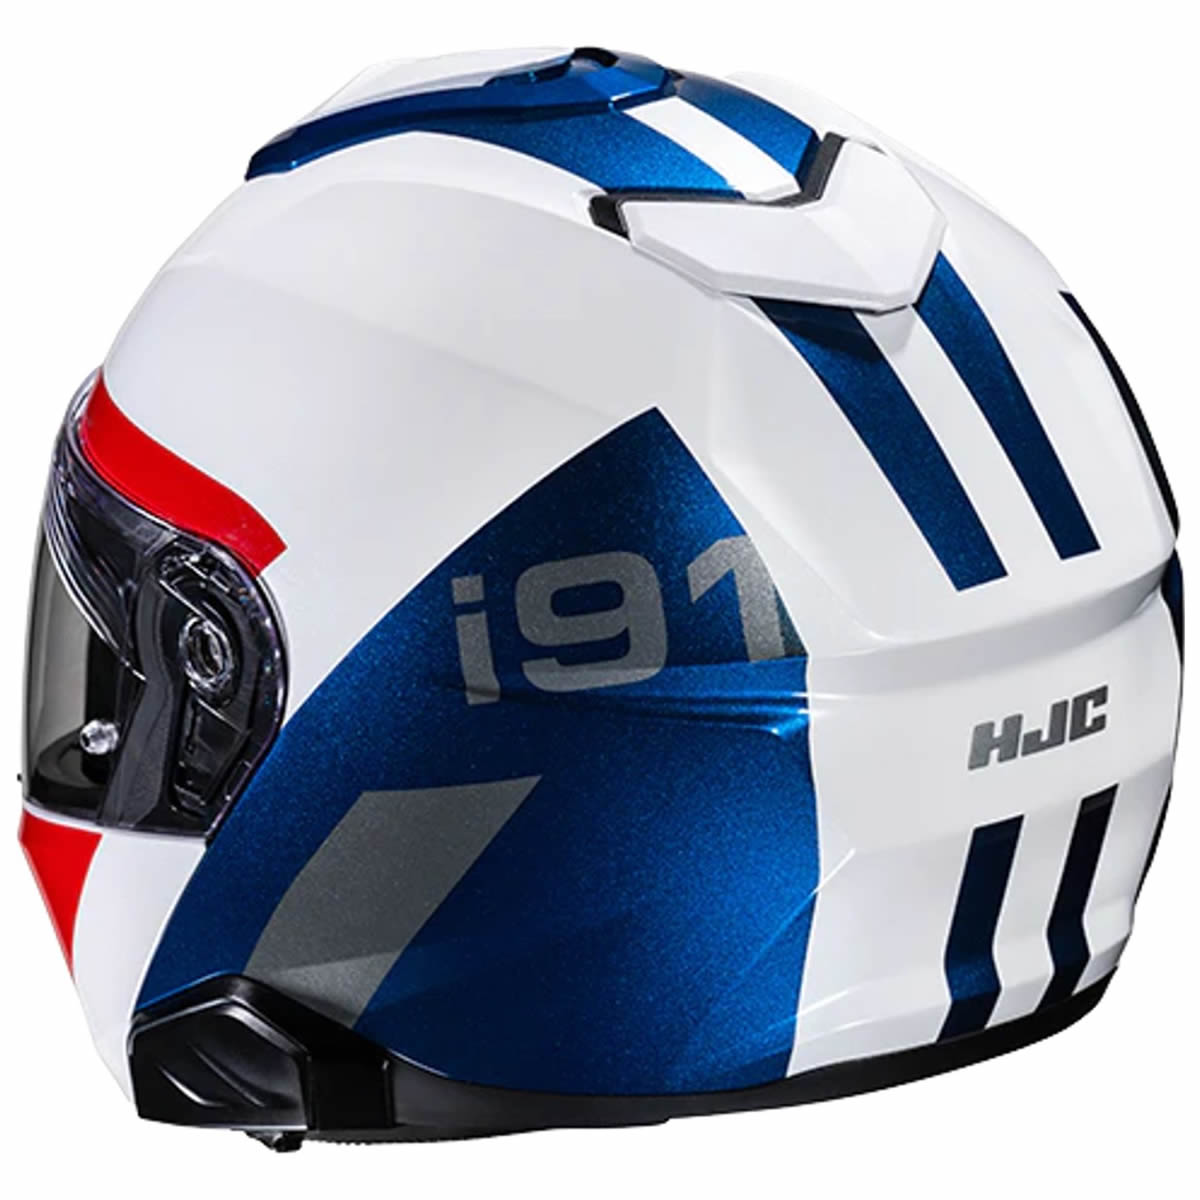 HJC i91 Bina Helm weiss-blau-rot-silber